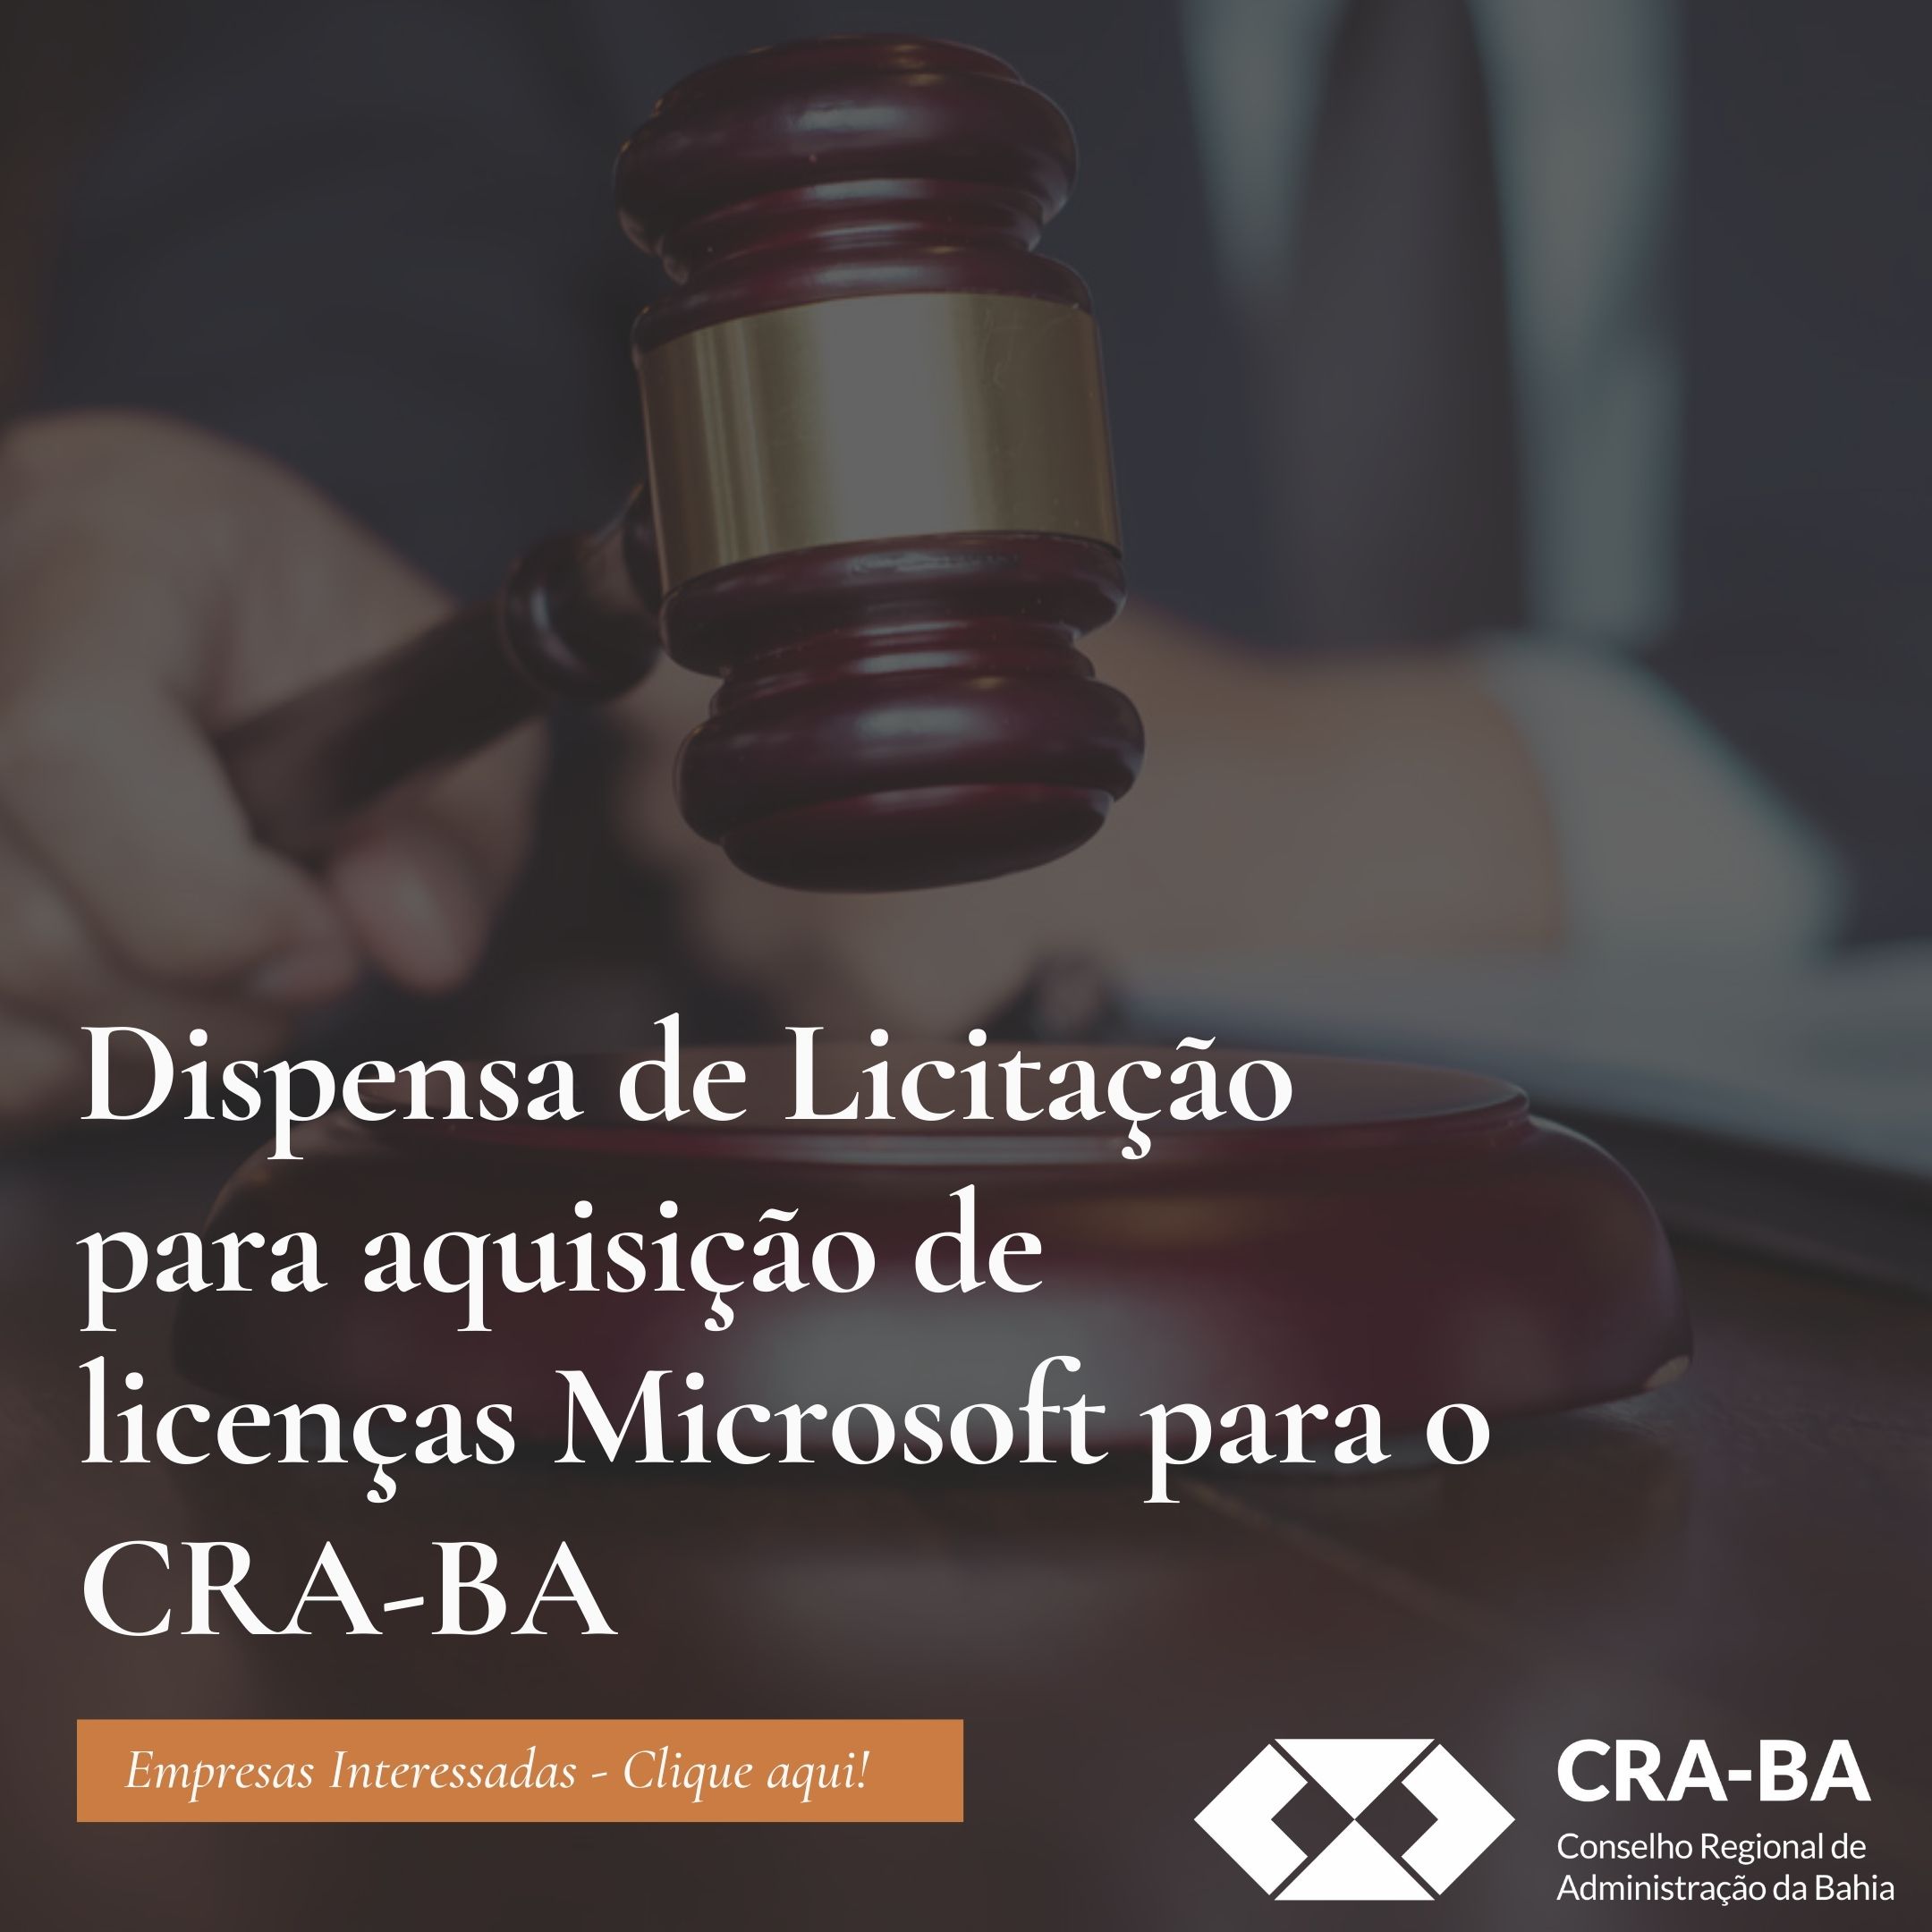 No momento você está vendo Dispensa de Licitação para aquisição de licenças Microsoft para o CRA-BA